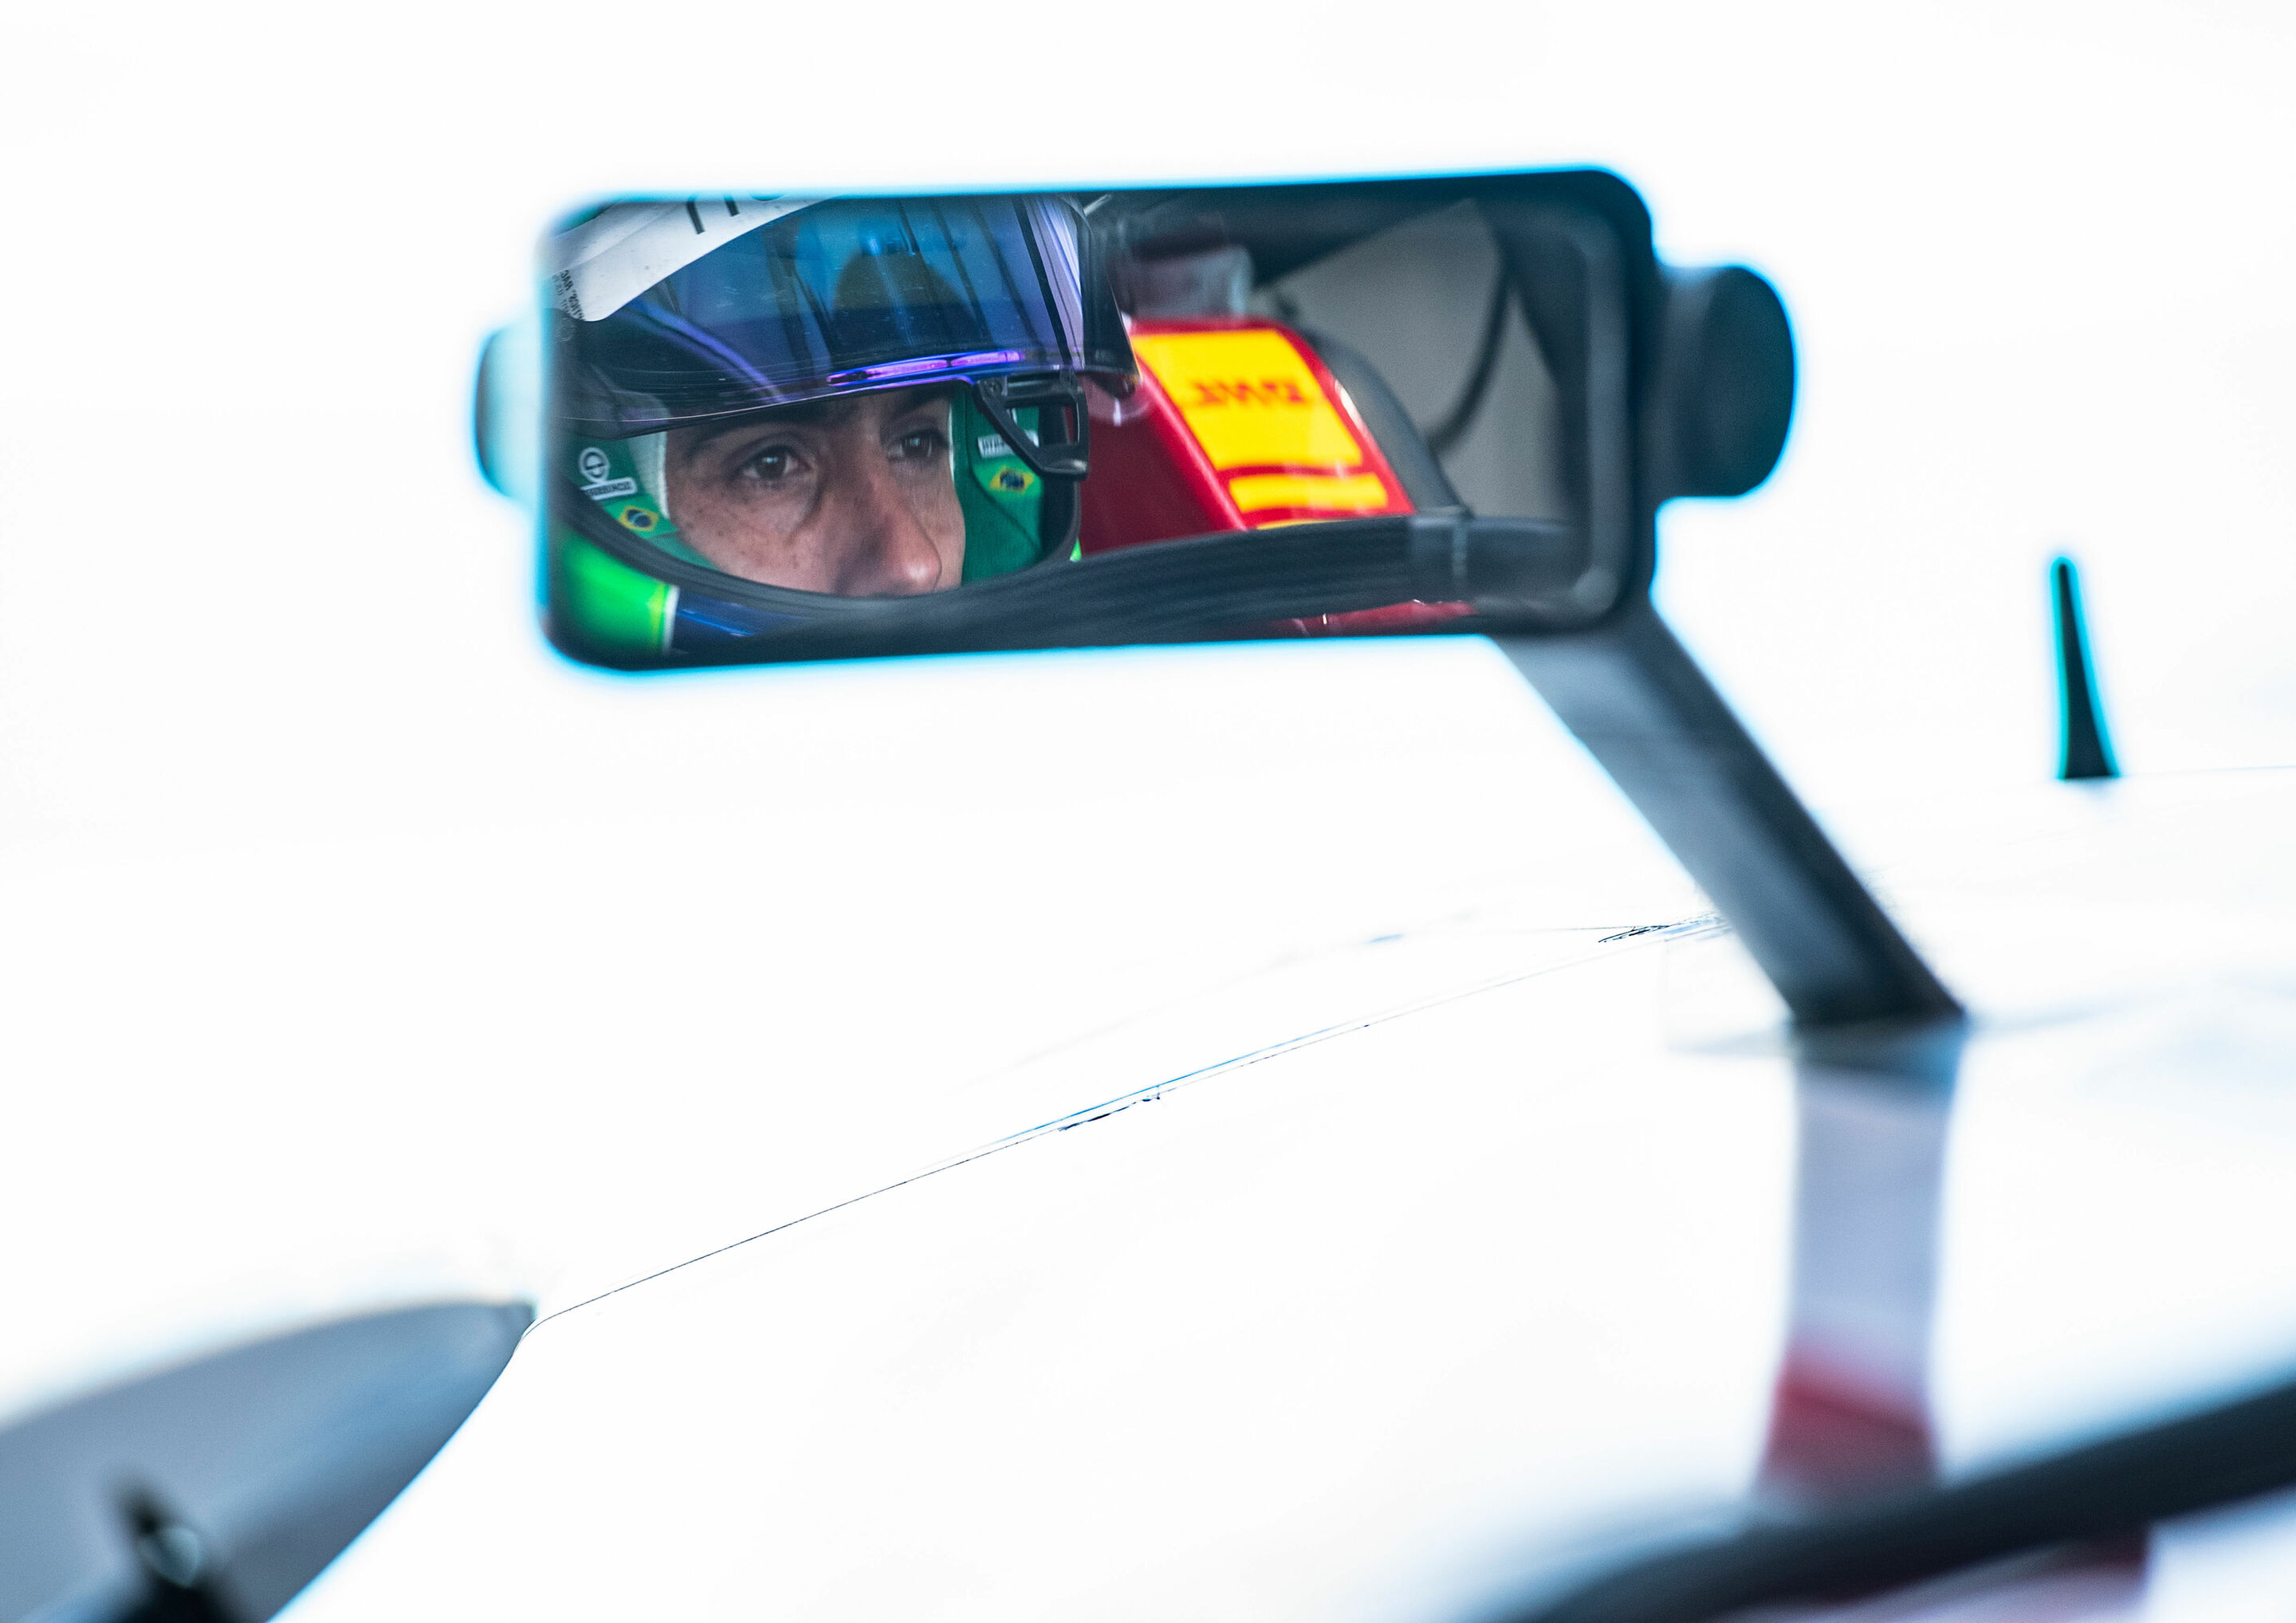 Formel E, Santiago E-Prix 2019